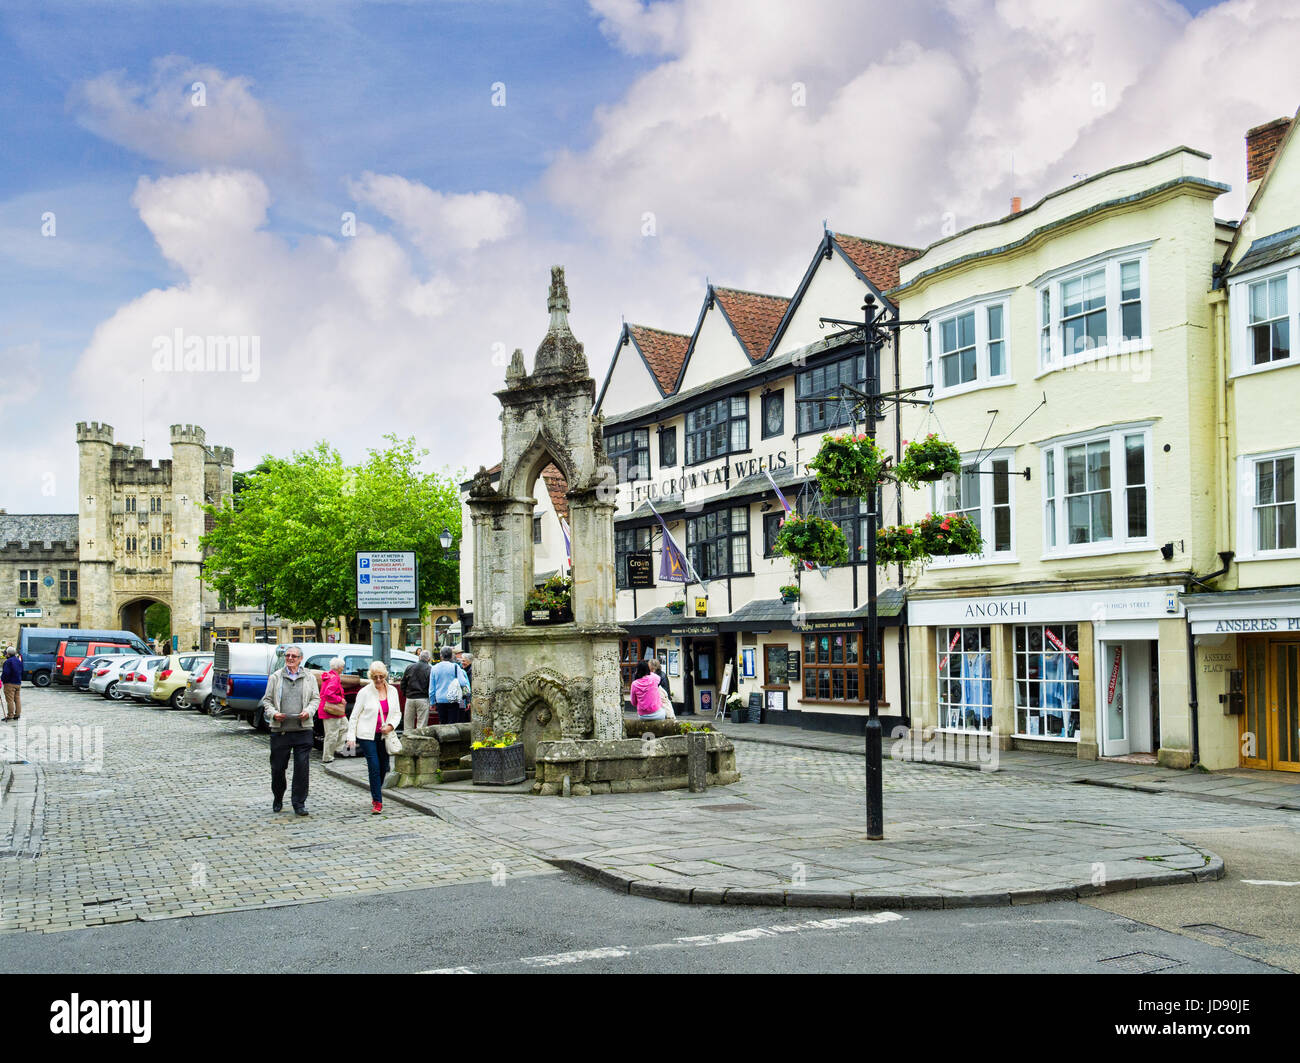 8 Giugno 2017: Wells, Somerset, Inghilterra, Regno Unito - Il centro storico della vecchia cattedrale della città di pozzetti, con la croce di mercato, Pay e Display parcheggio, pub, Foto Stock